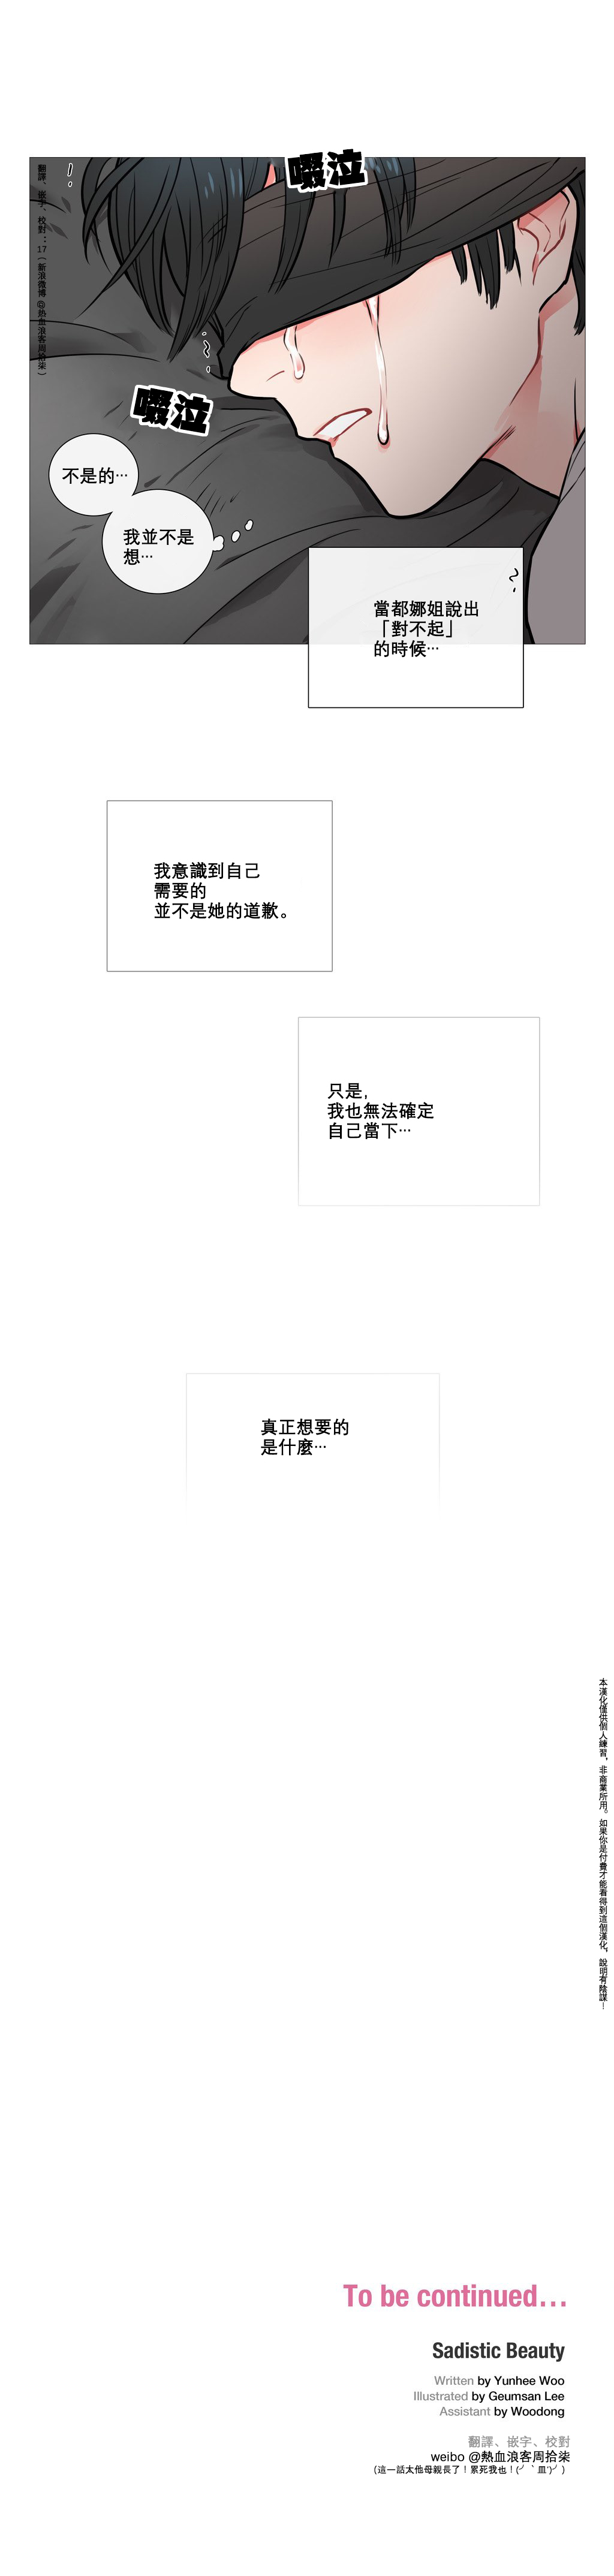 【神山】サディスティックビューティーCh.1-8【中国語】【17汉化】